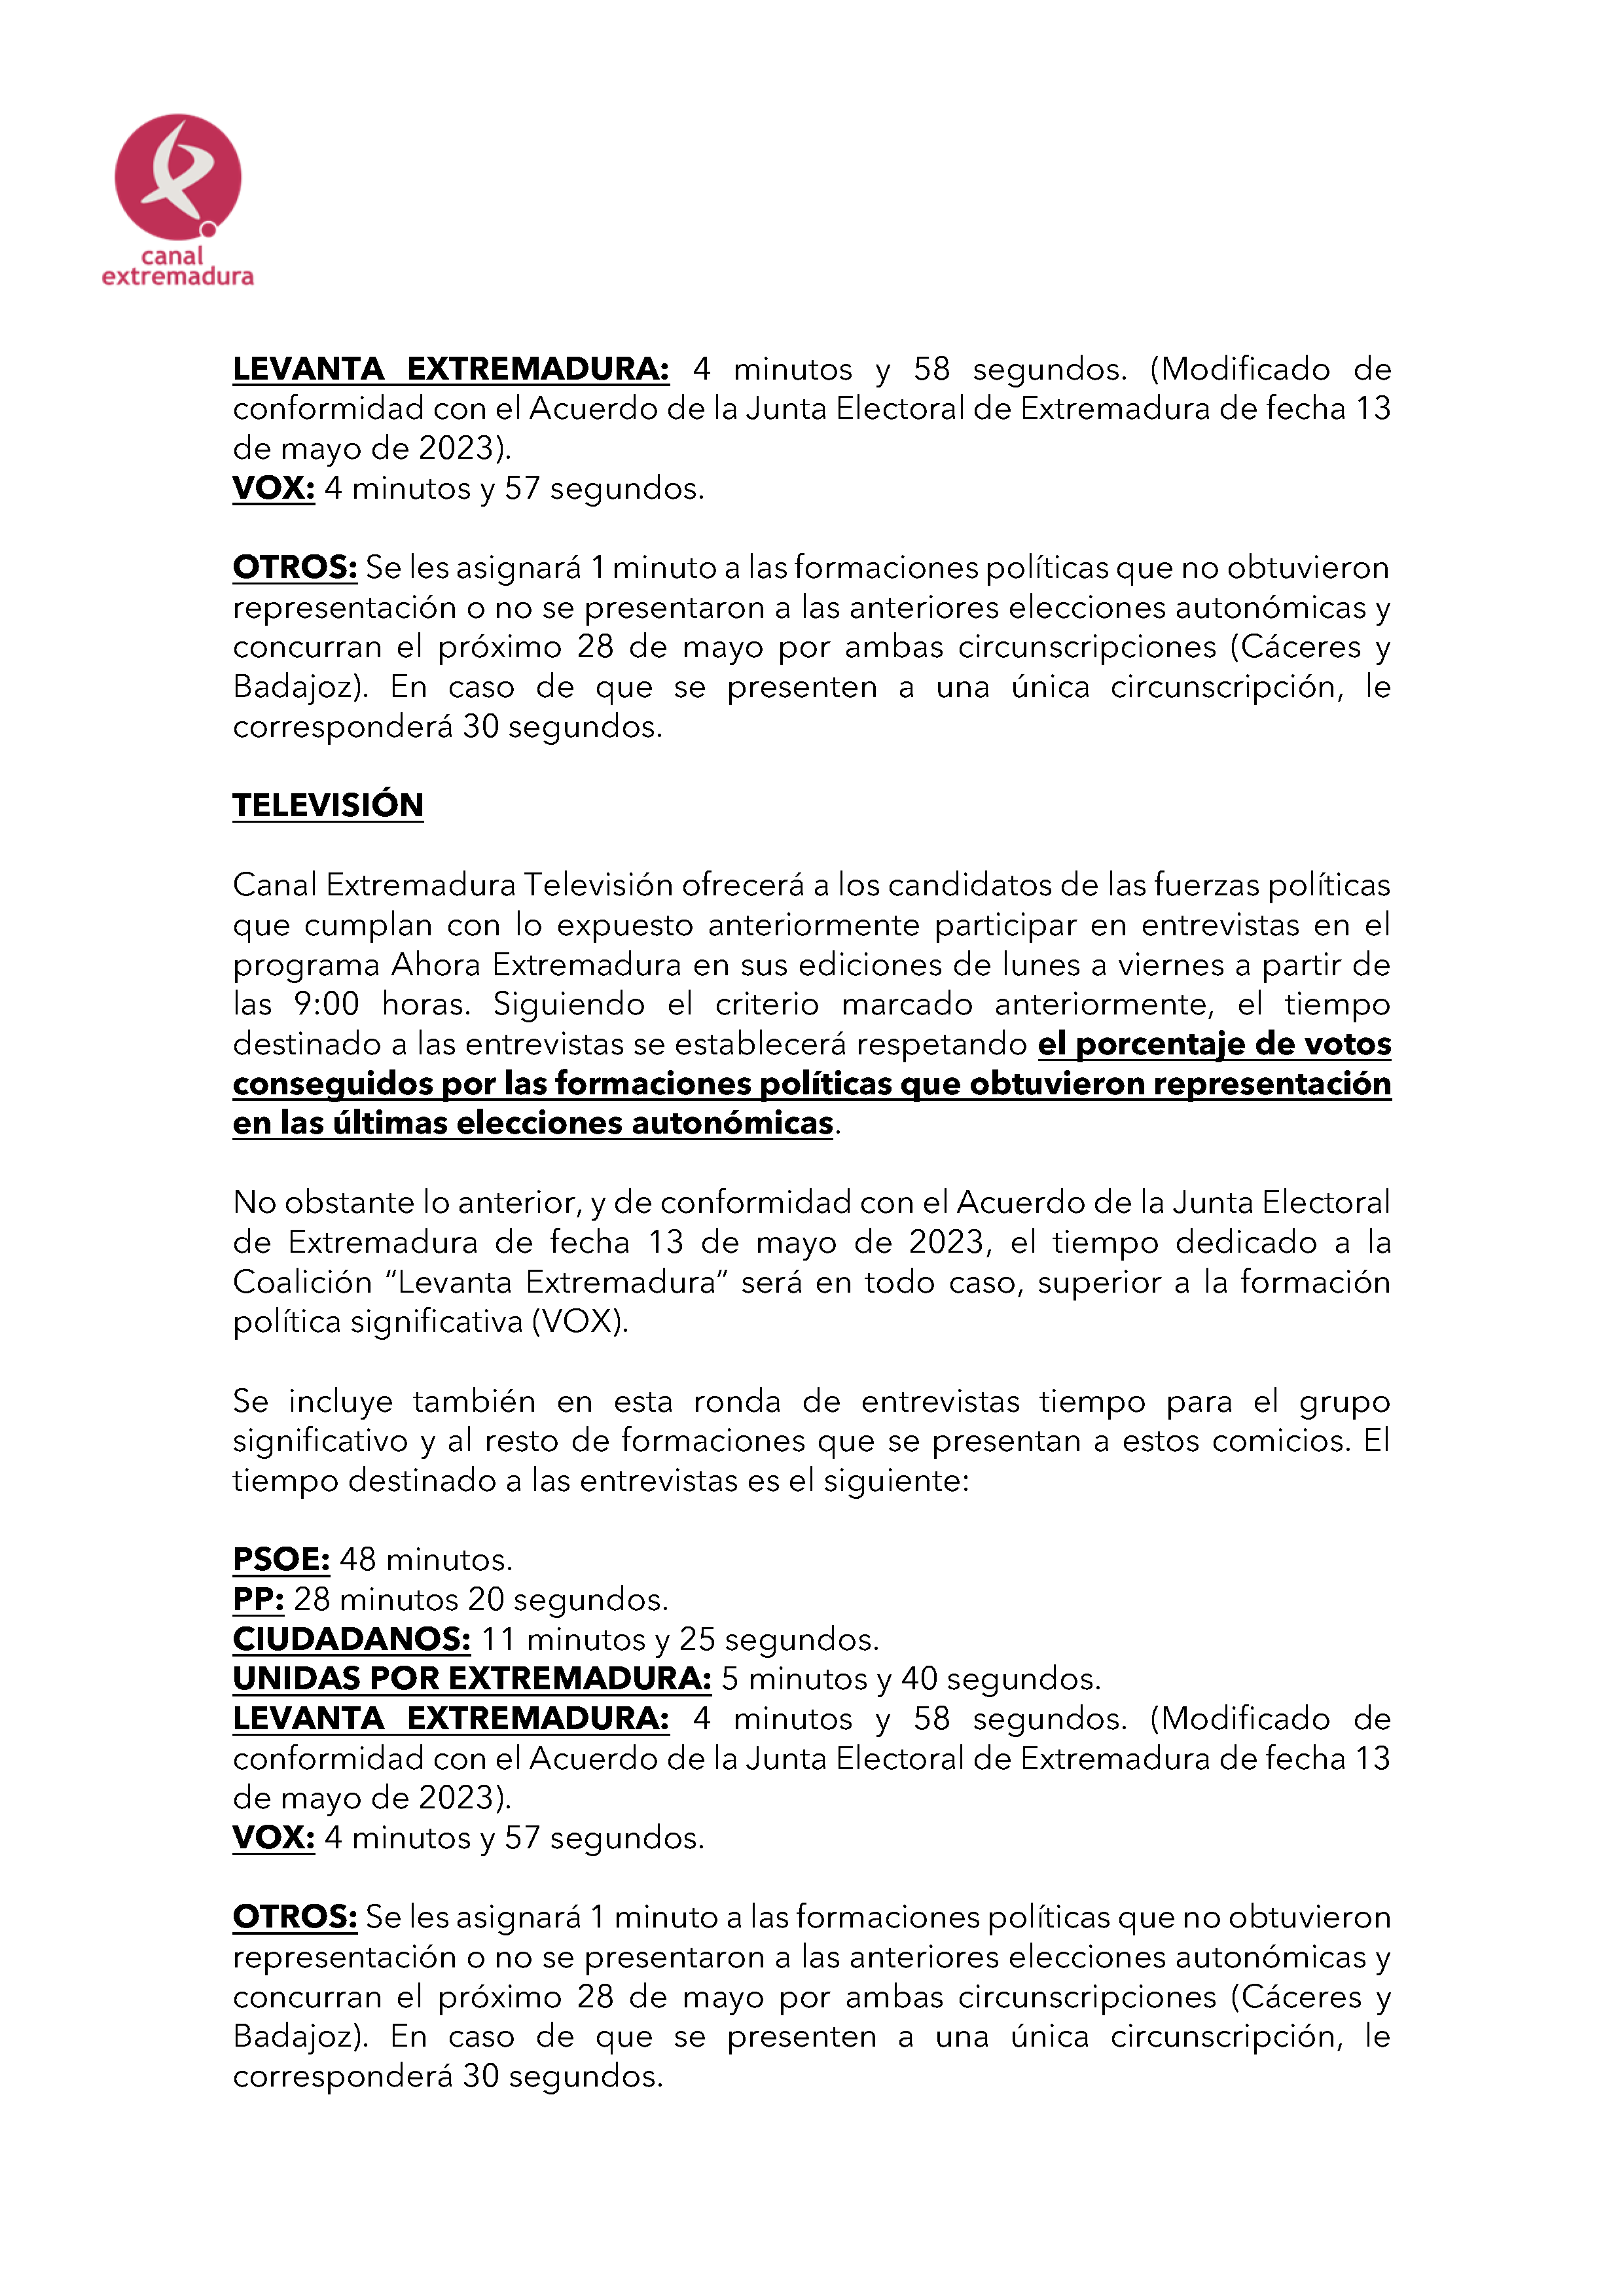 PLAN DE COBERTURA INFORMATIVA DE CANAL EXTREMADURA ELECCIONES AUTONÓMICAS 2023. Pag 7